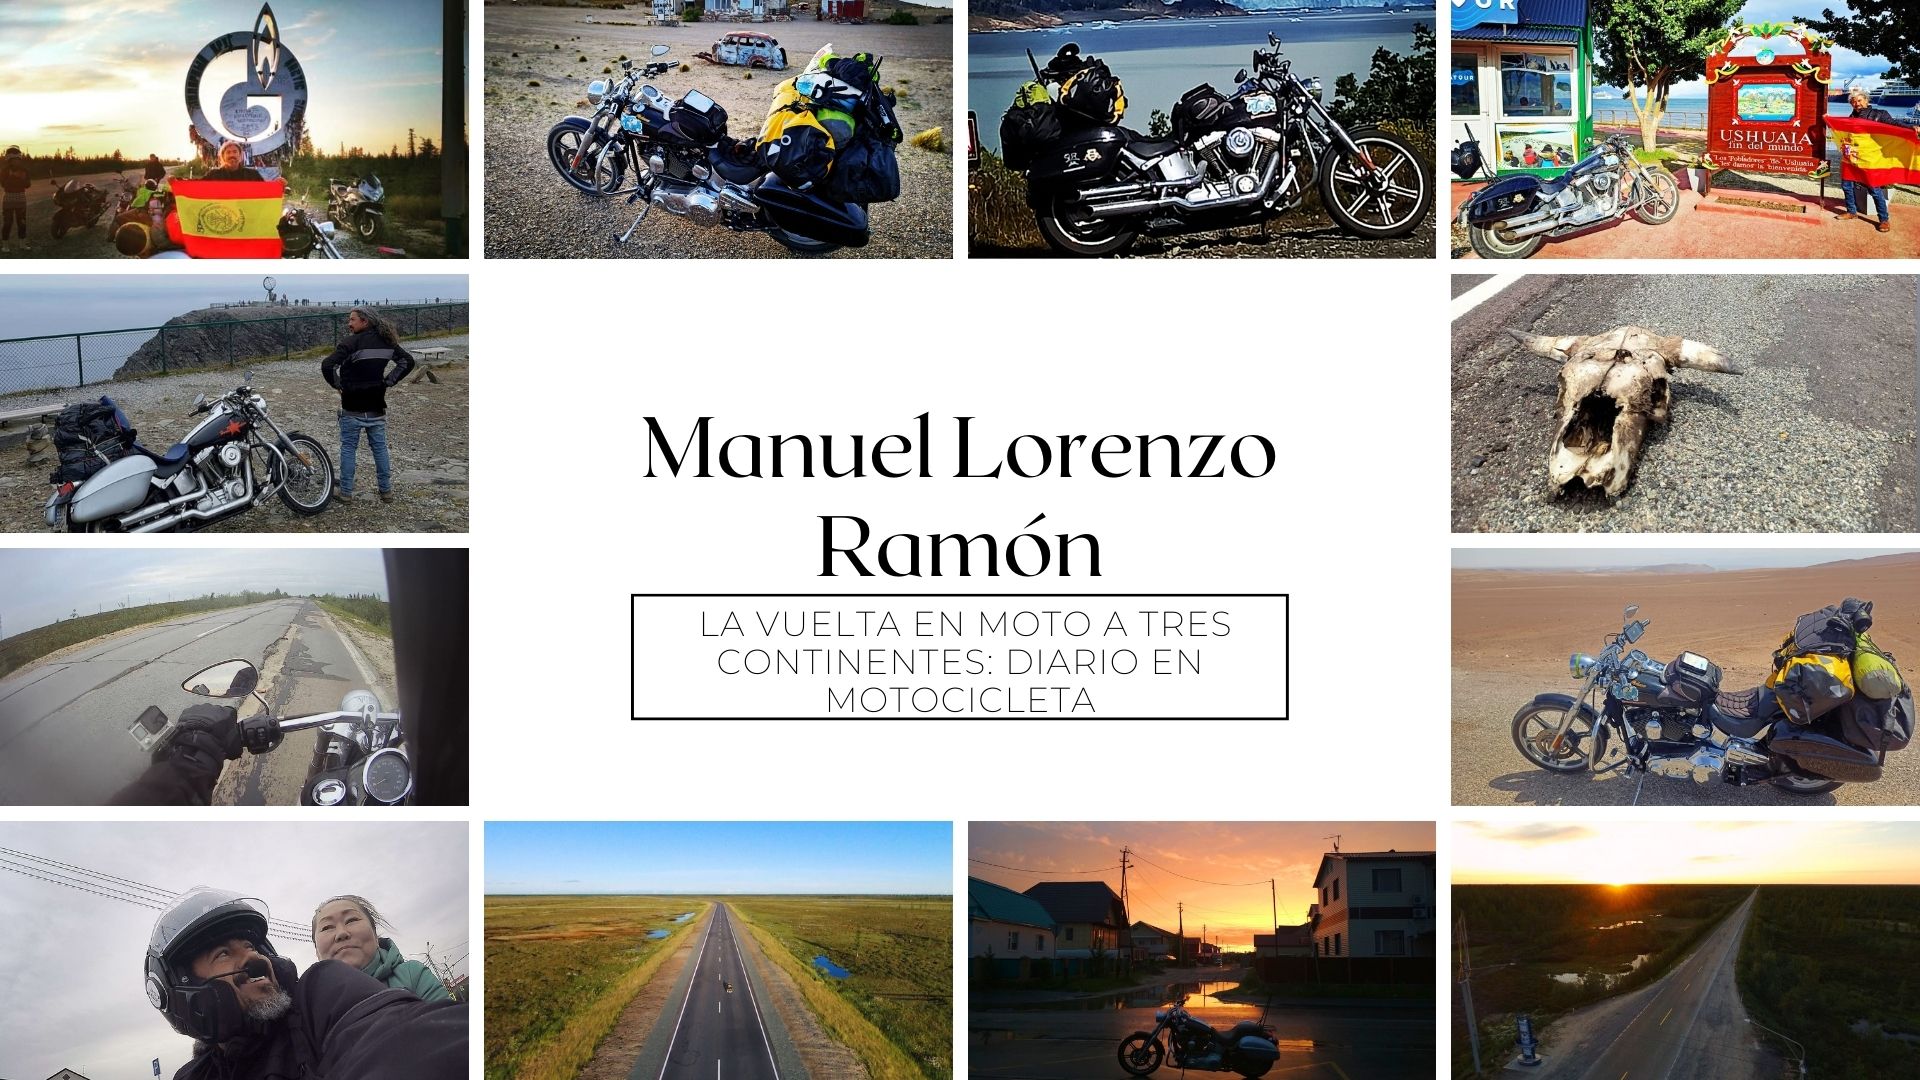 La vuelta en moto a tres continentes: Diario en motocicleta